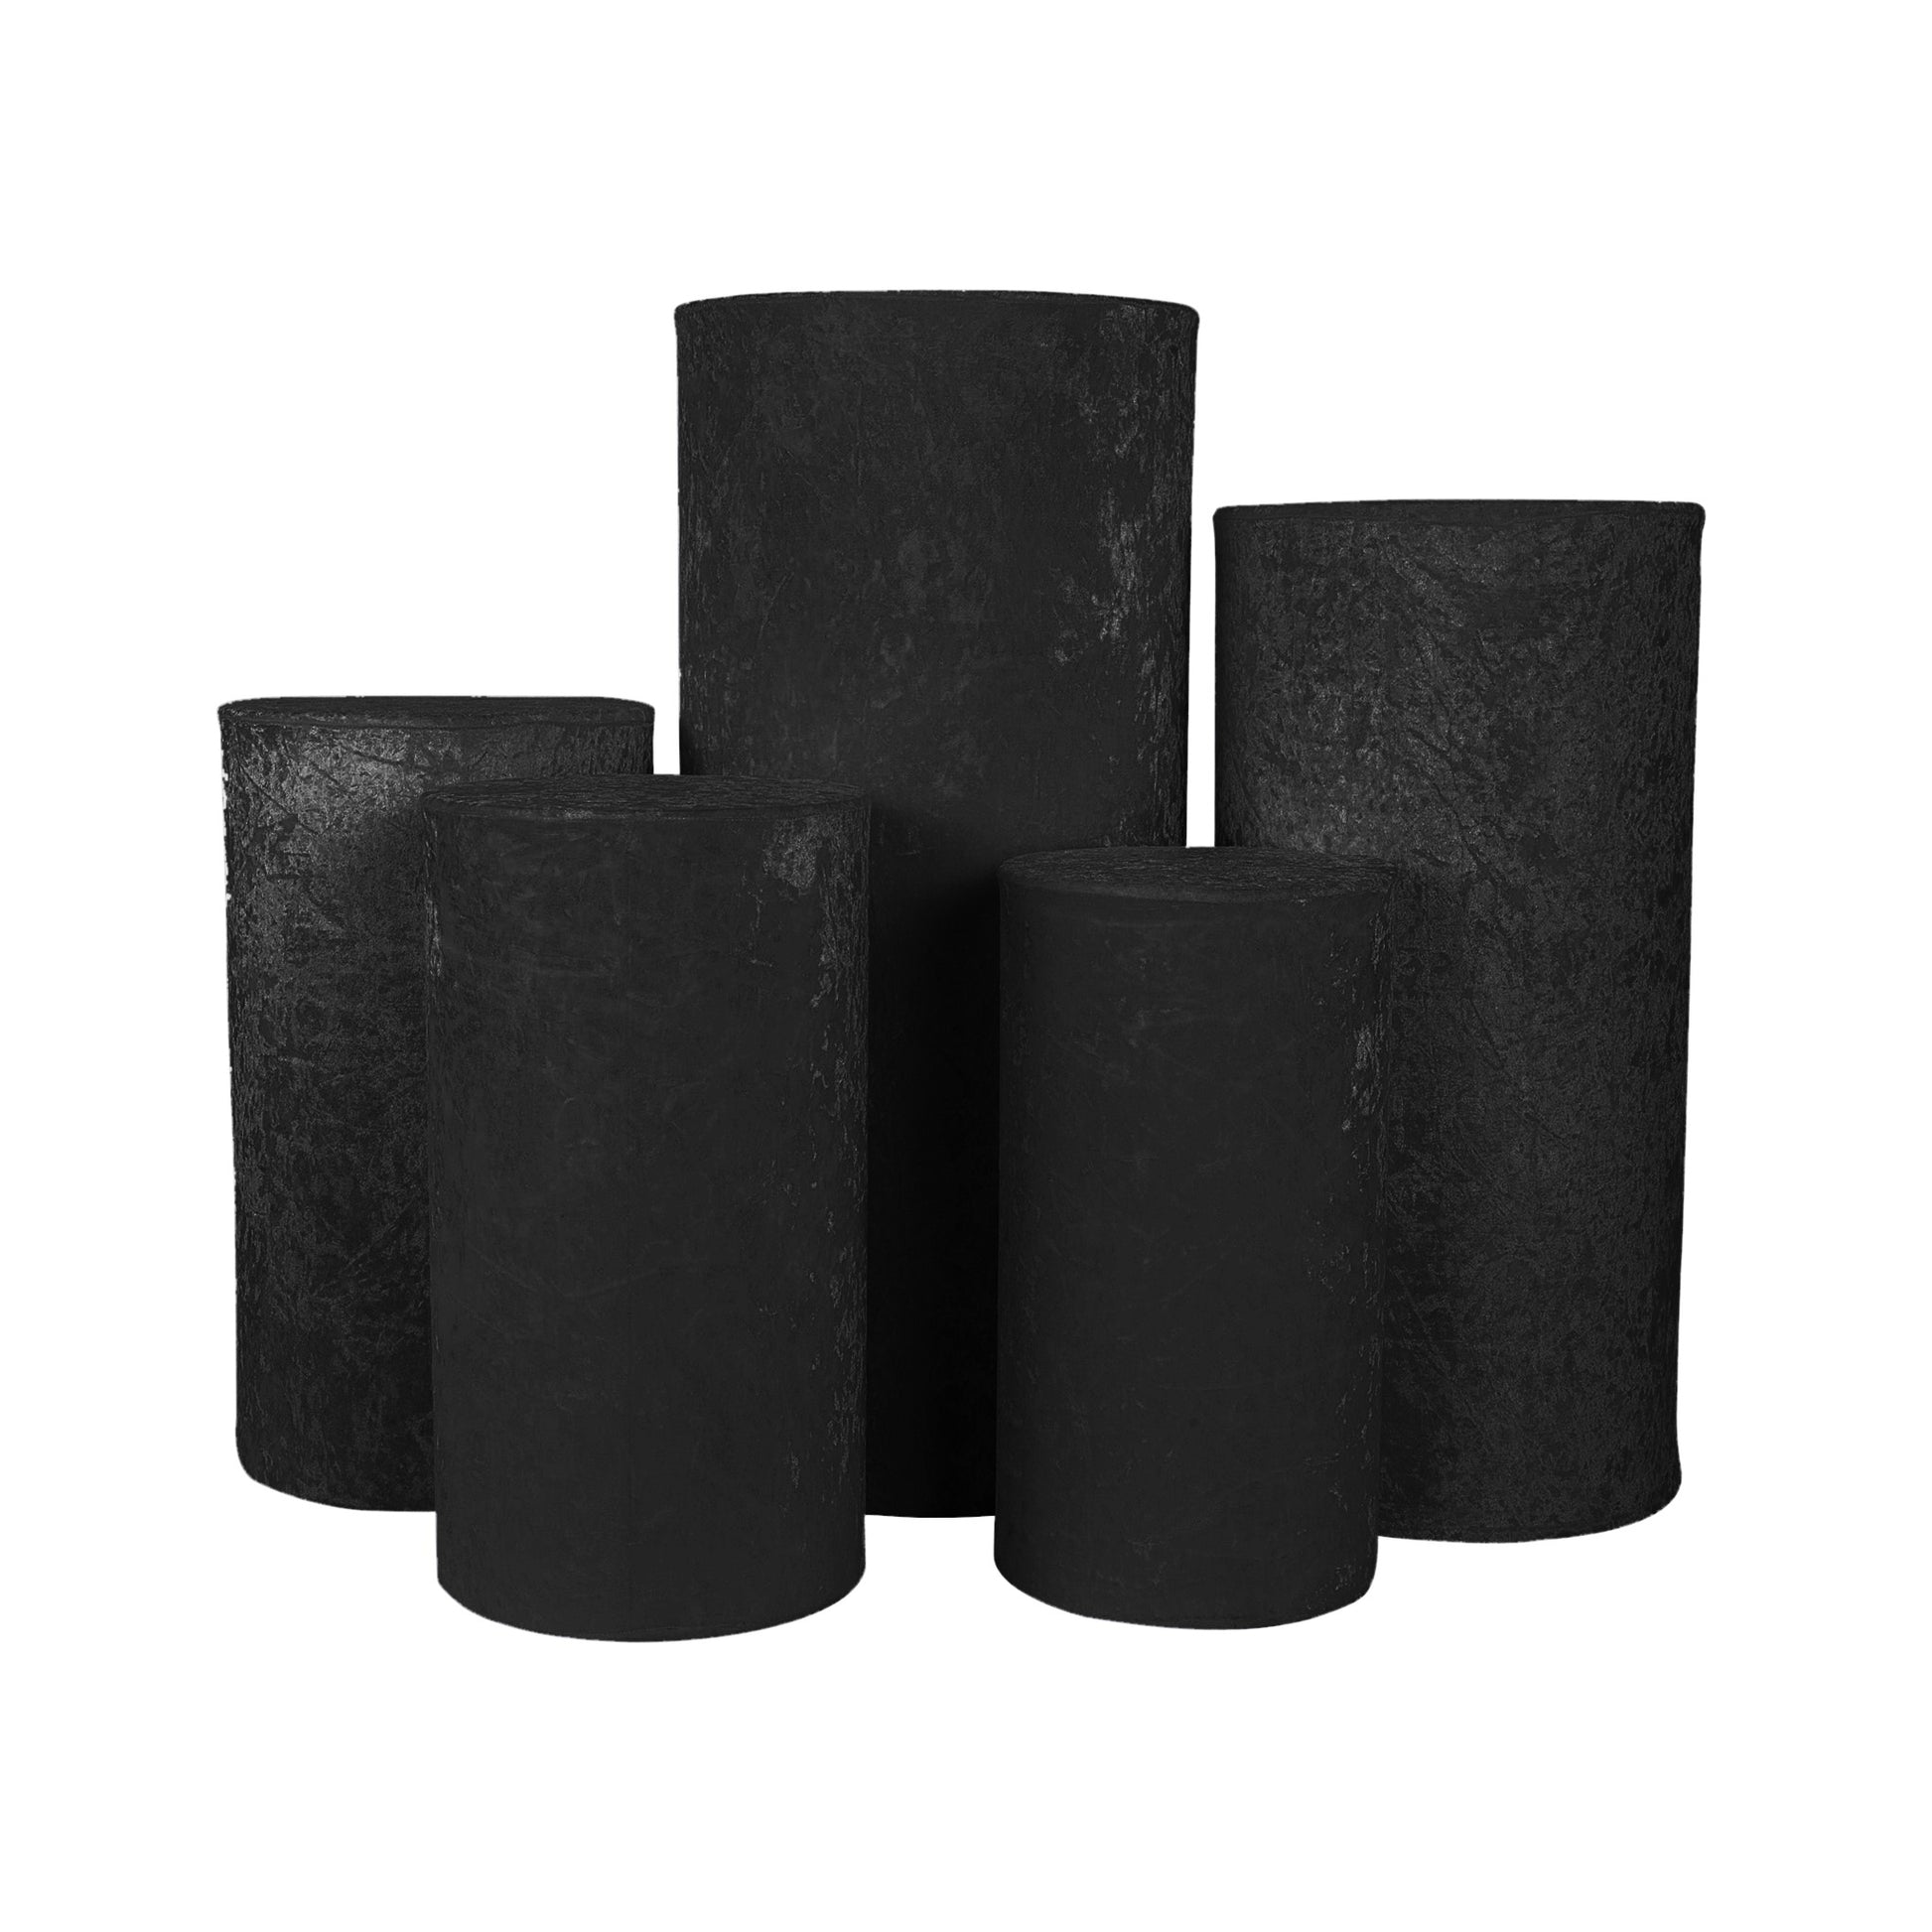 Velvet Covers for Metal Cylinder Pedestal Stands 5 pcs/set - Black